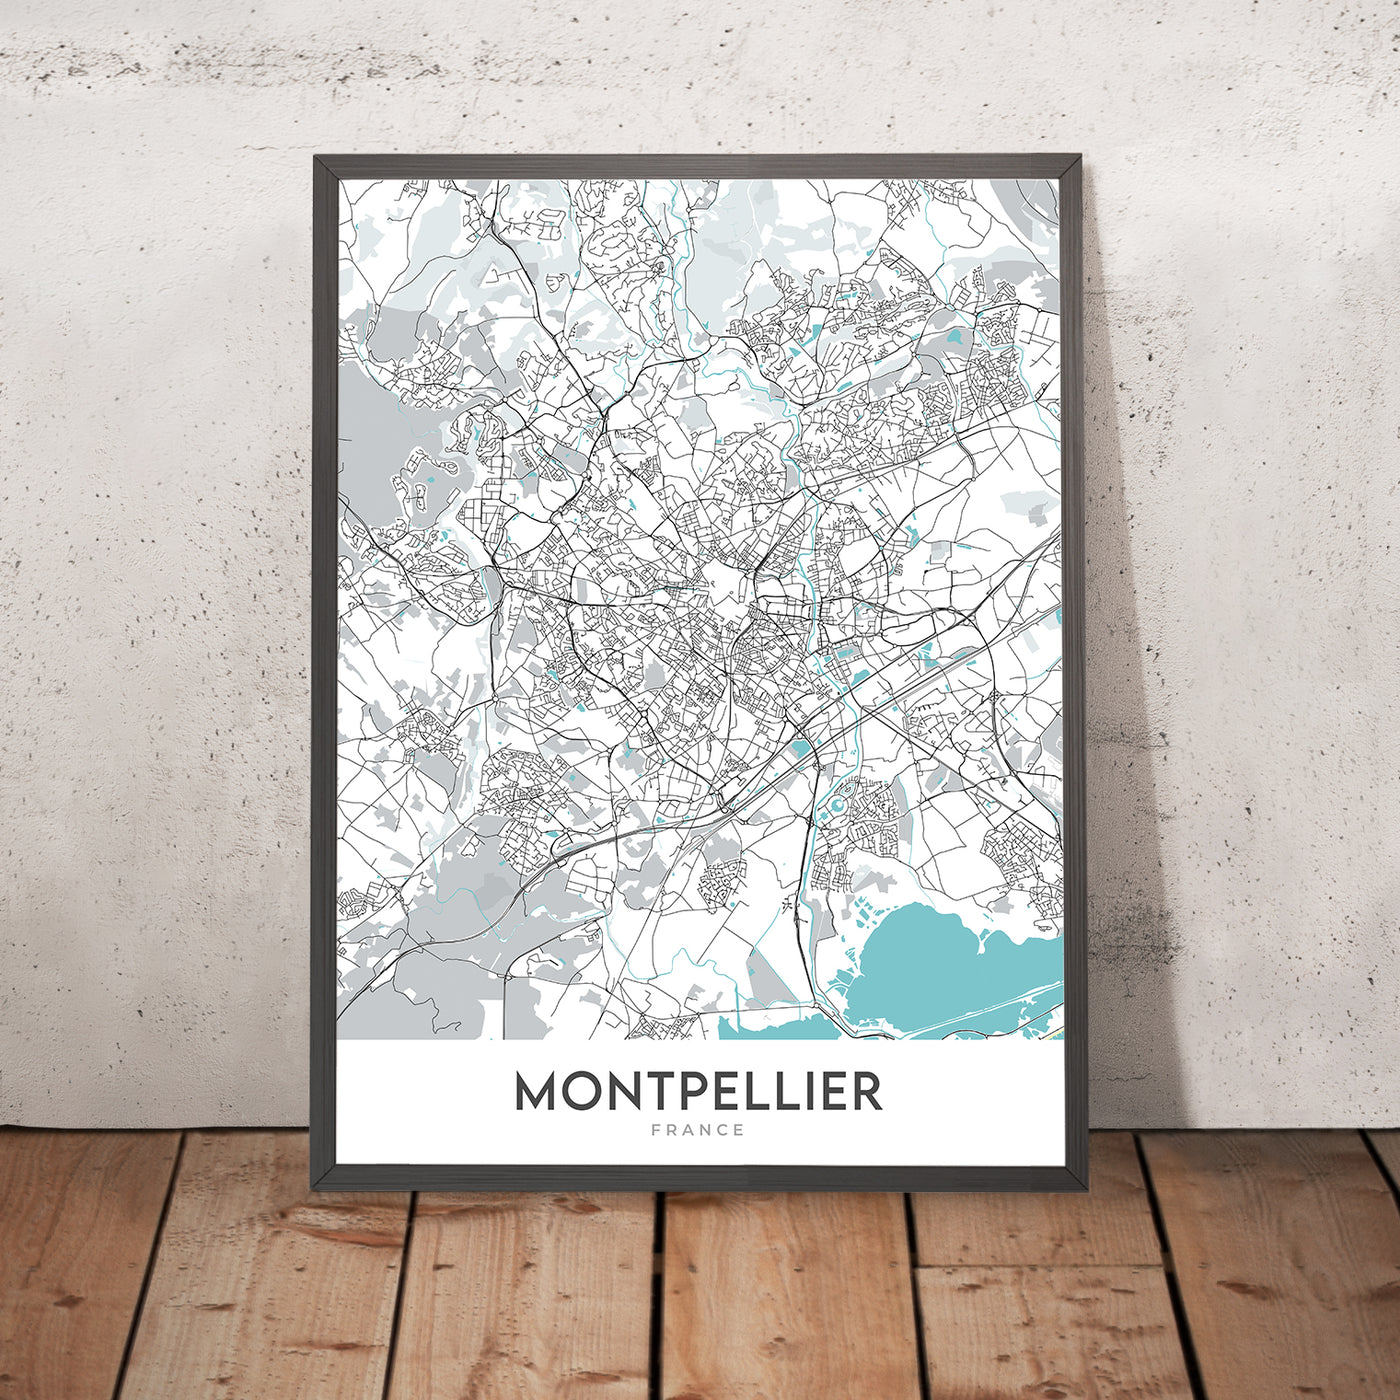 Moderner Stadtplan von Montpellier, Frankreich: Antigone, Beaux Arts, Cathédrale Saint-Pierre, Opéra Comédie, Place de la Comédie